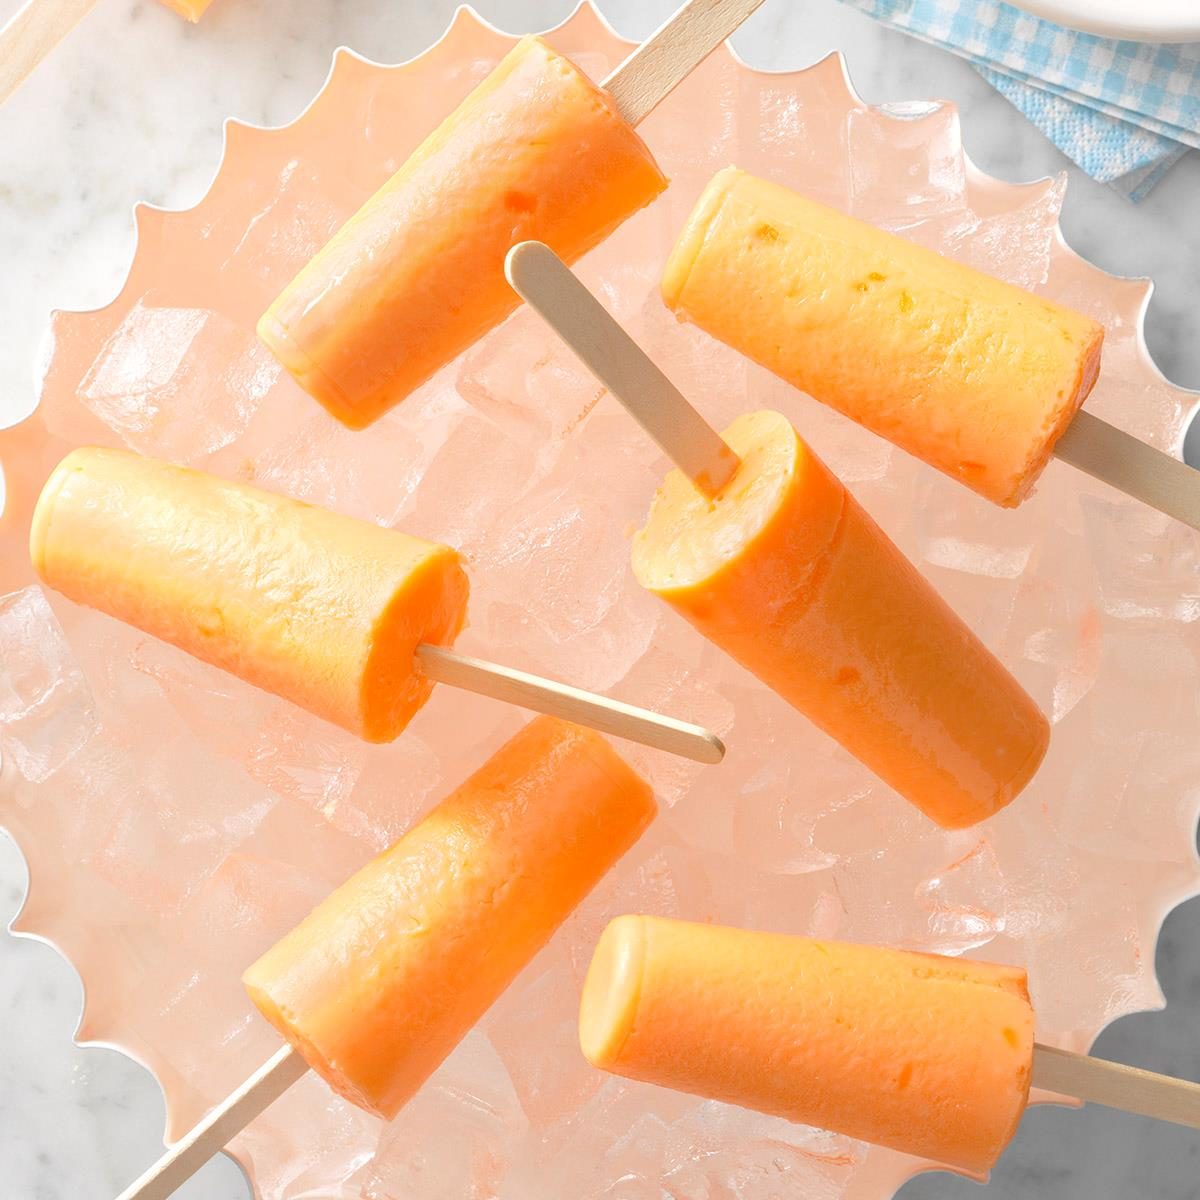 Orange Cream Popsicles Recipe